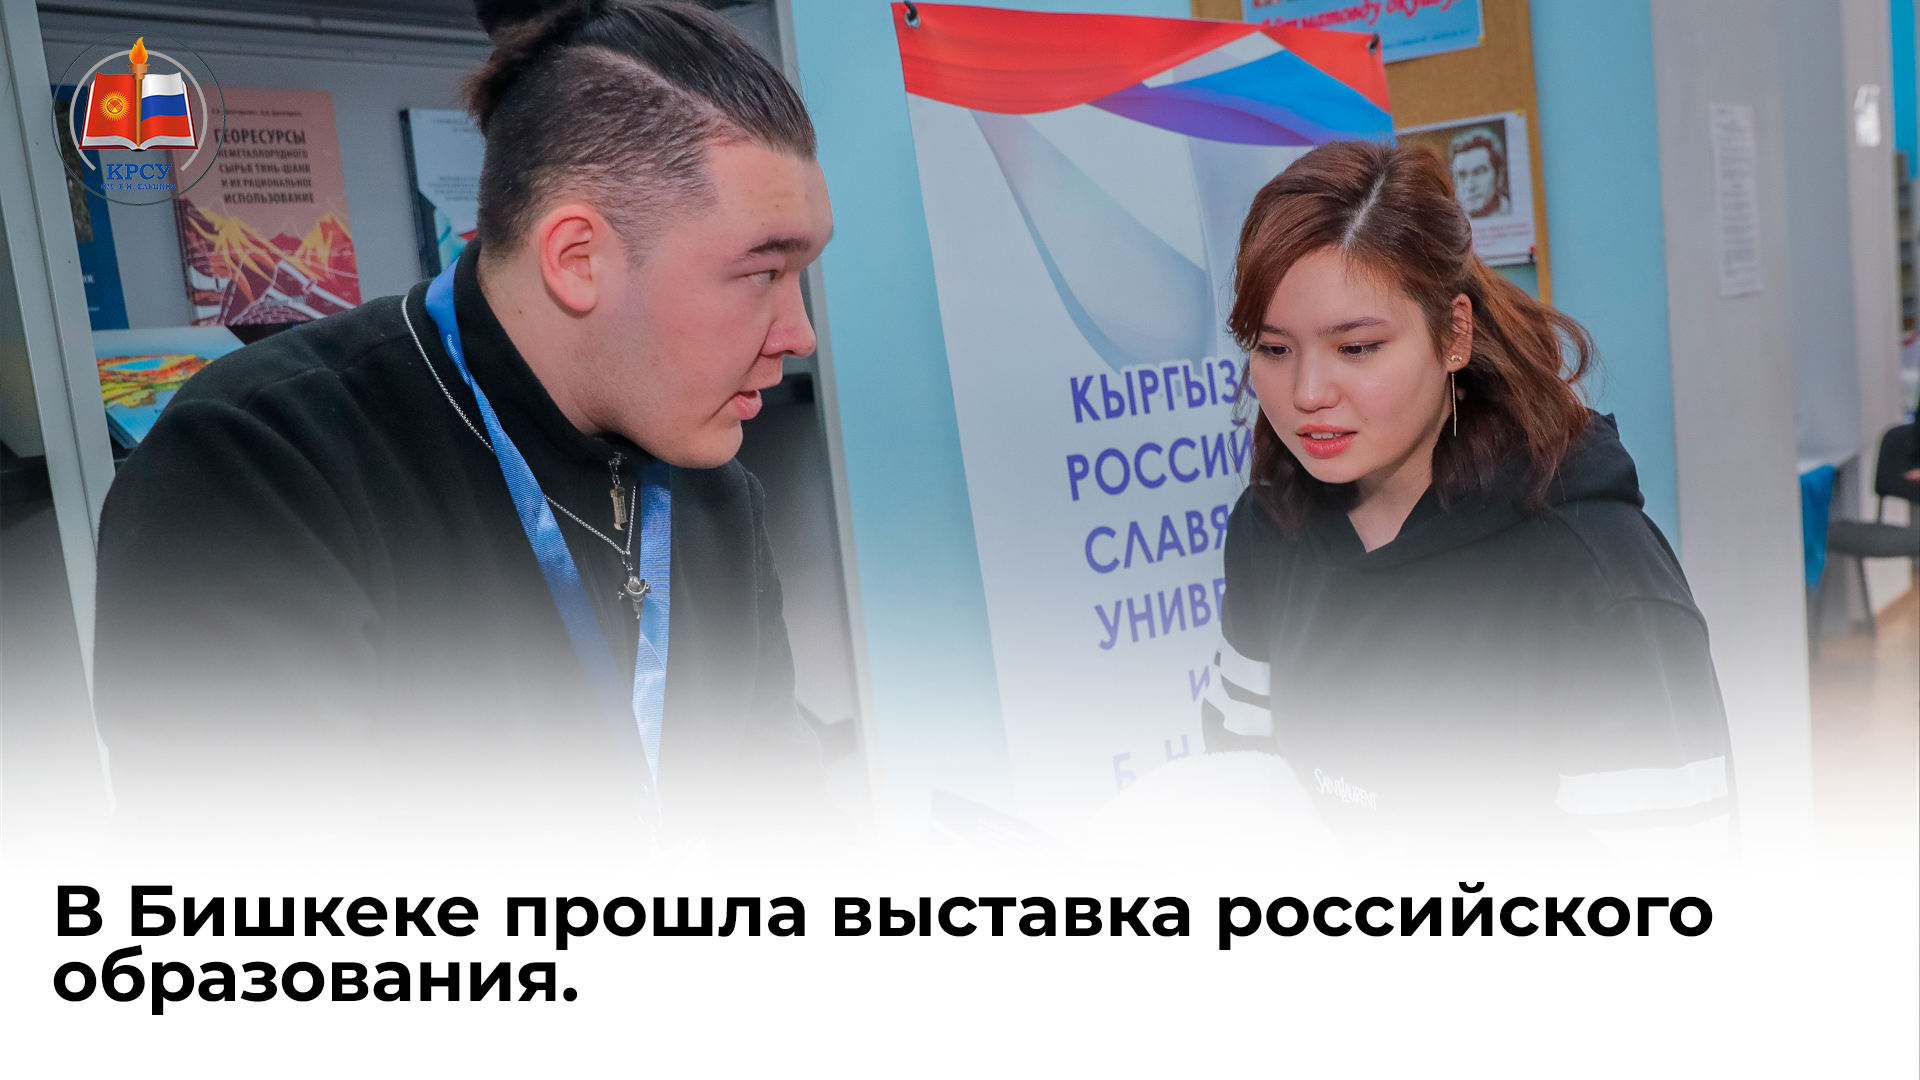 В Бишкеке прошла выставка российского образования.